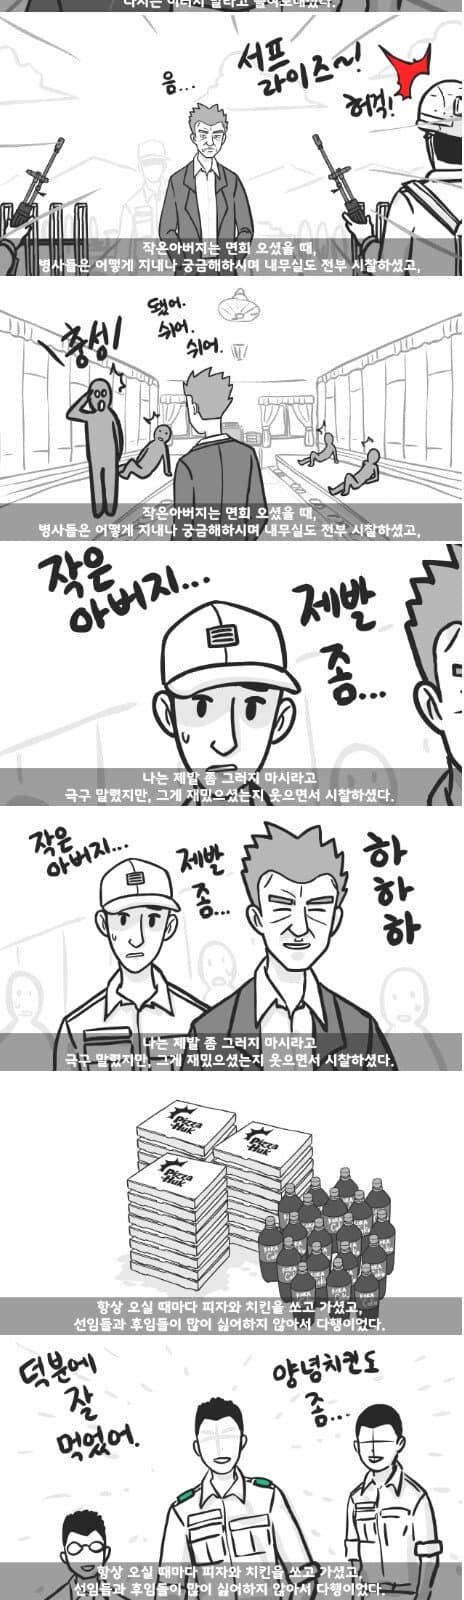 군대 4스타인 만화 27.jpg